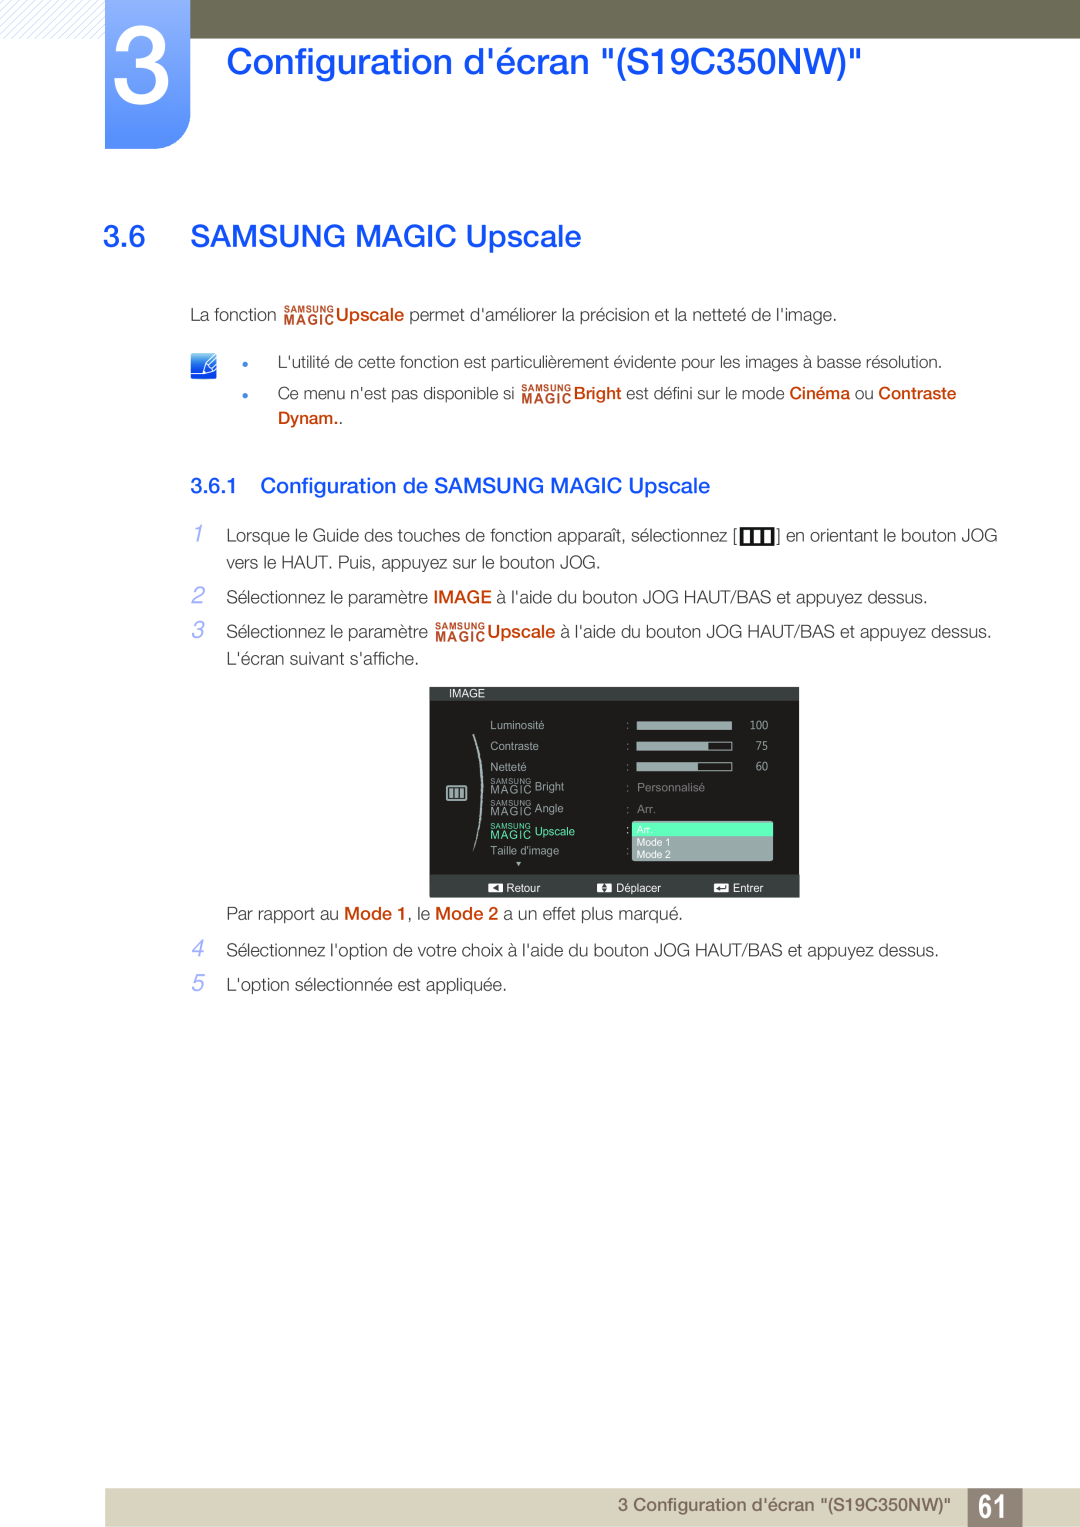 Samsung LS24C350HS/EN, LS22C350HS/EN manual Configuration de SAMSUNG MAGIC Upscale, Configuration décran S19C350NW 